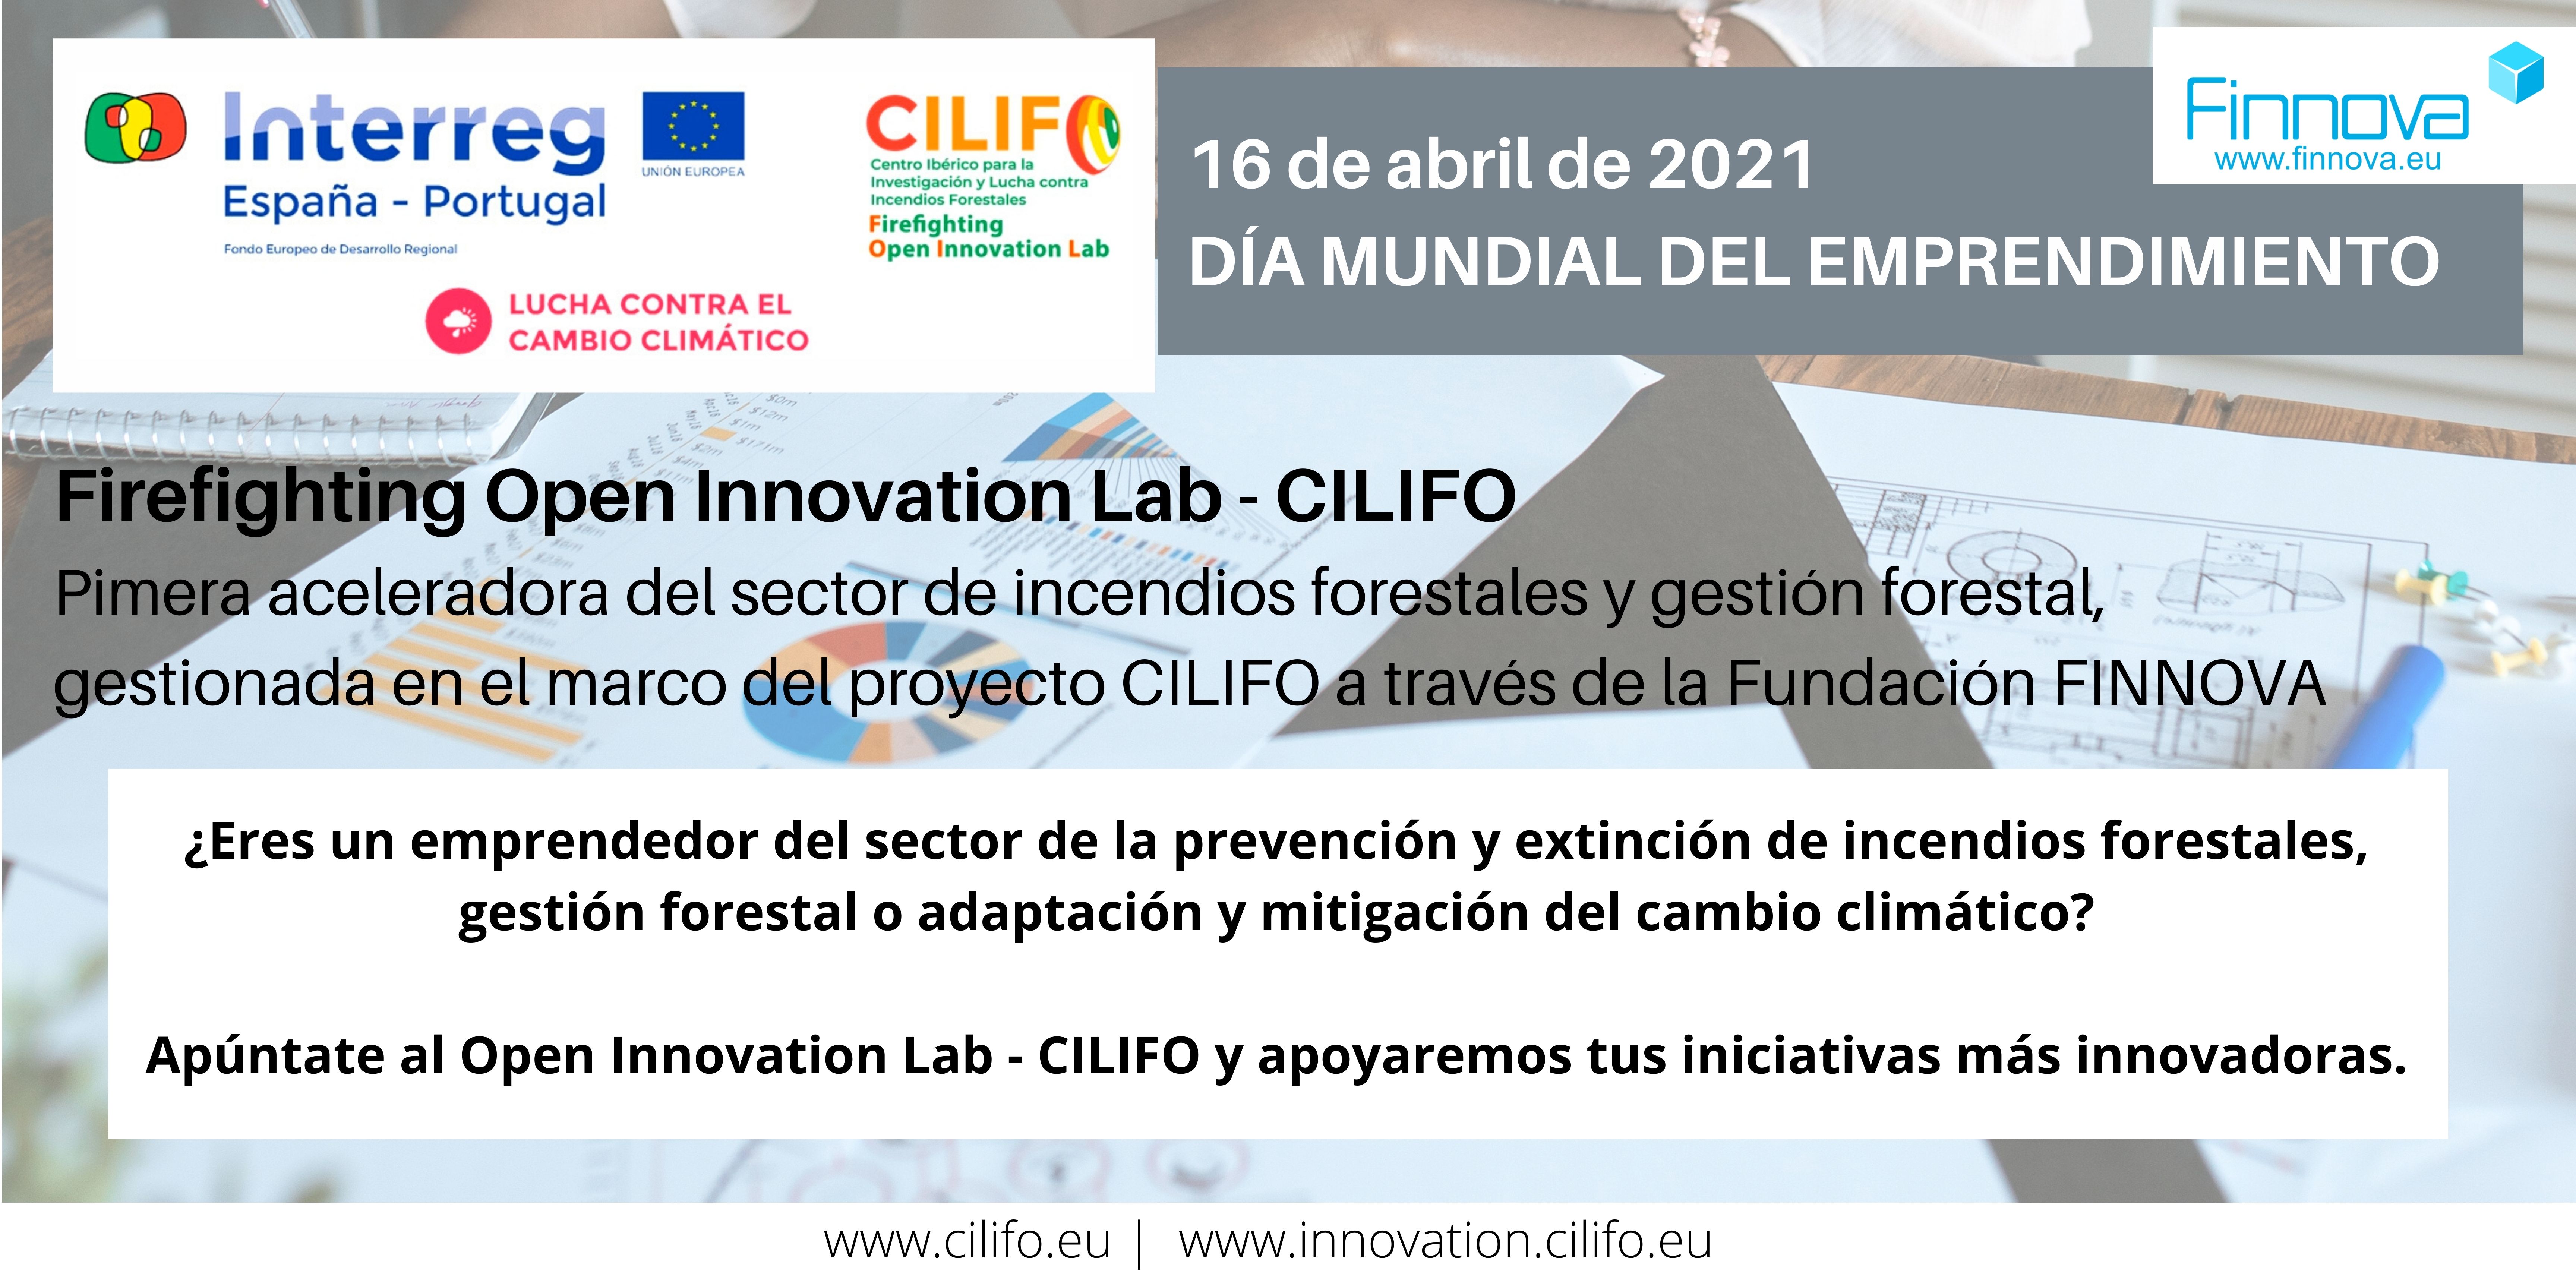 El Firefighting Open Innovation Lab – CILIFO se une a la celebración del Día Mundial del Emprendimiento